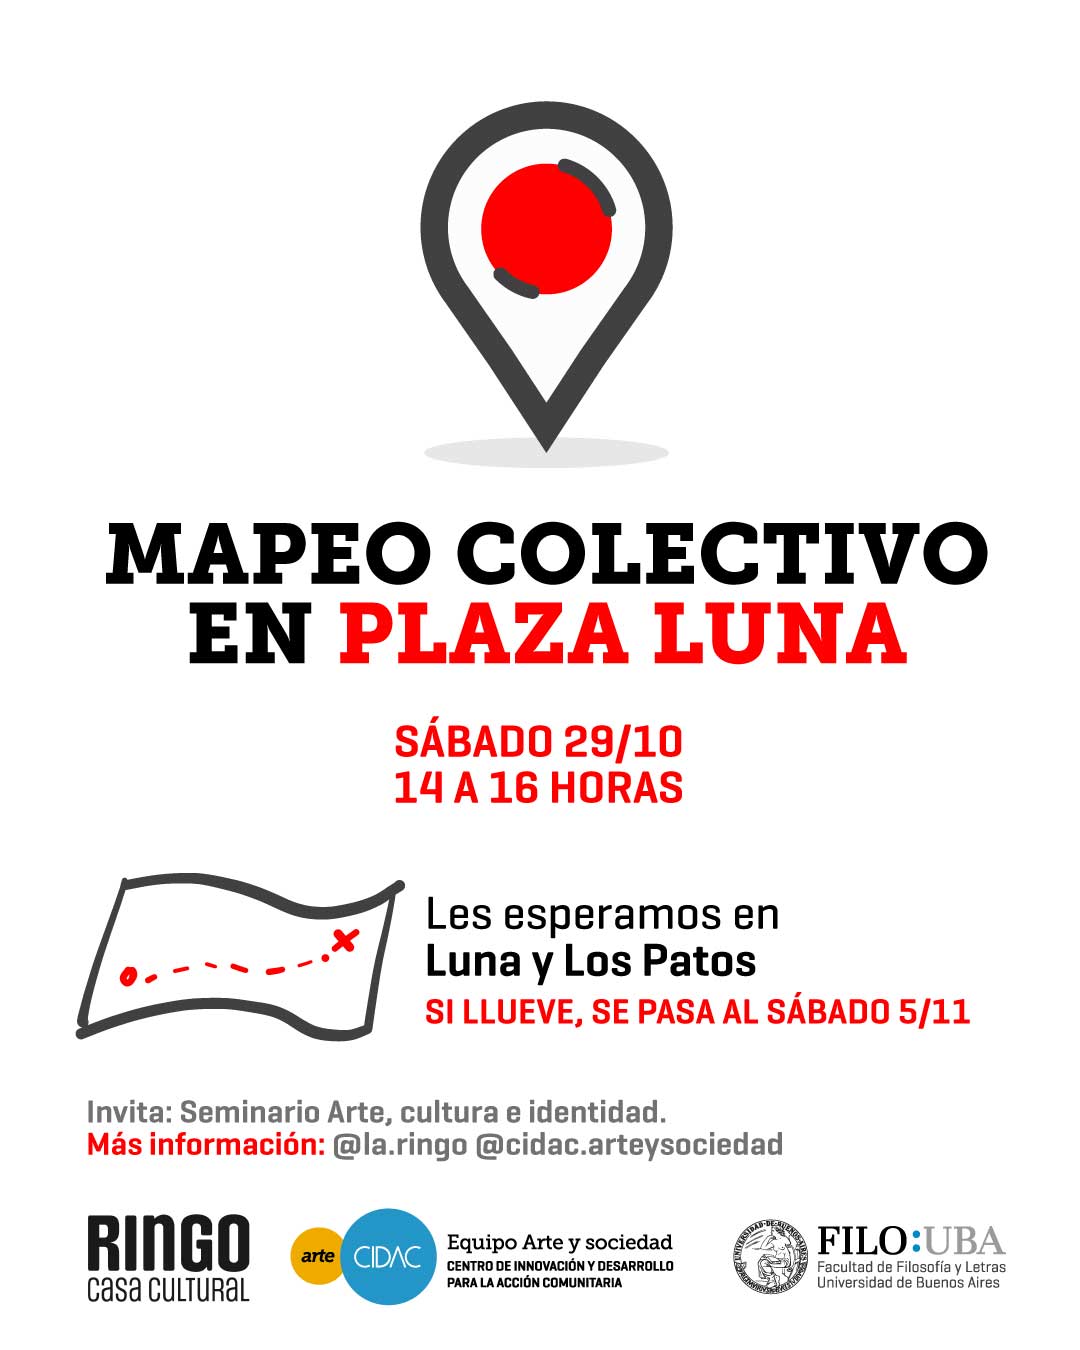 Mapeo colectivo en Plaza Luna